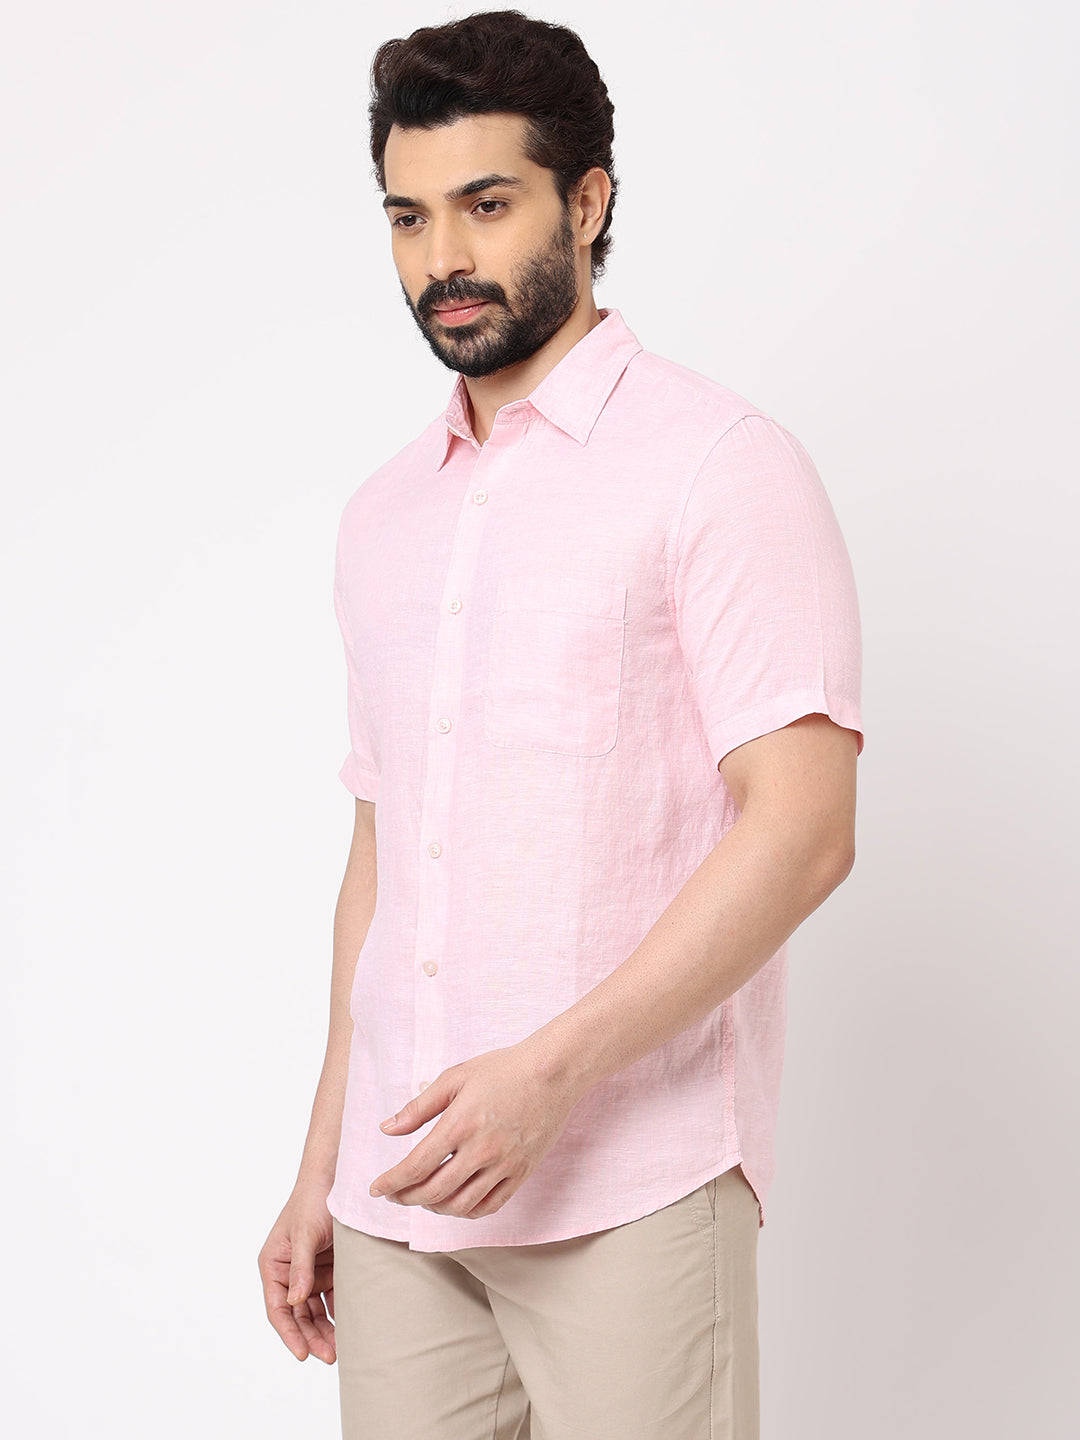 Mens 100% Linen Short Sleeve Light Pink Regular Fit Shirt